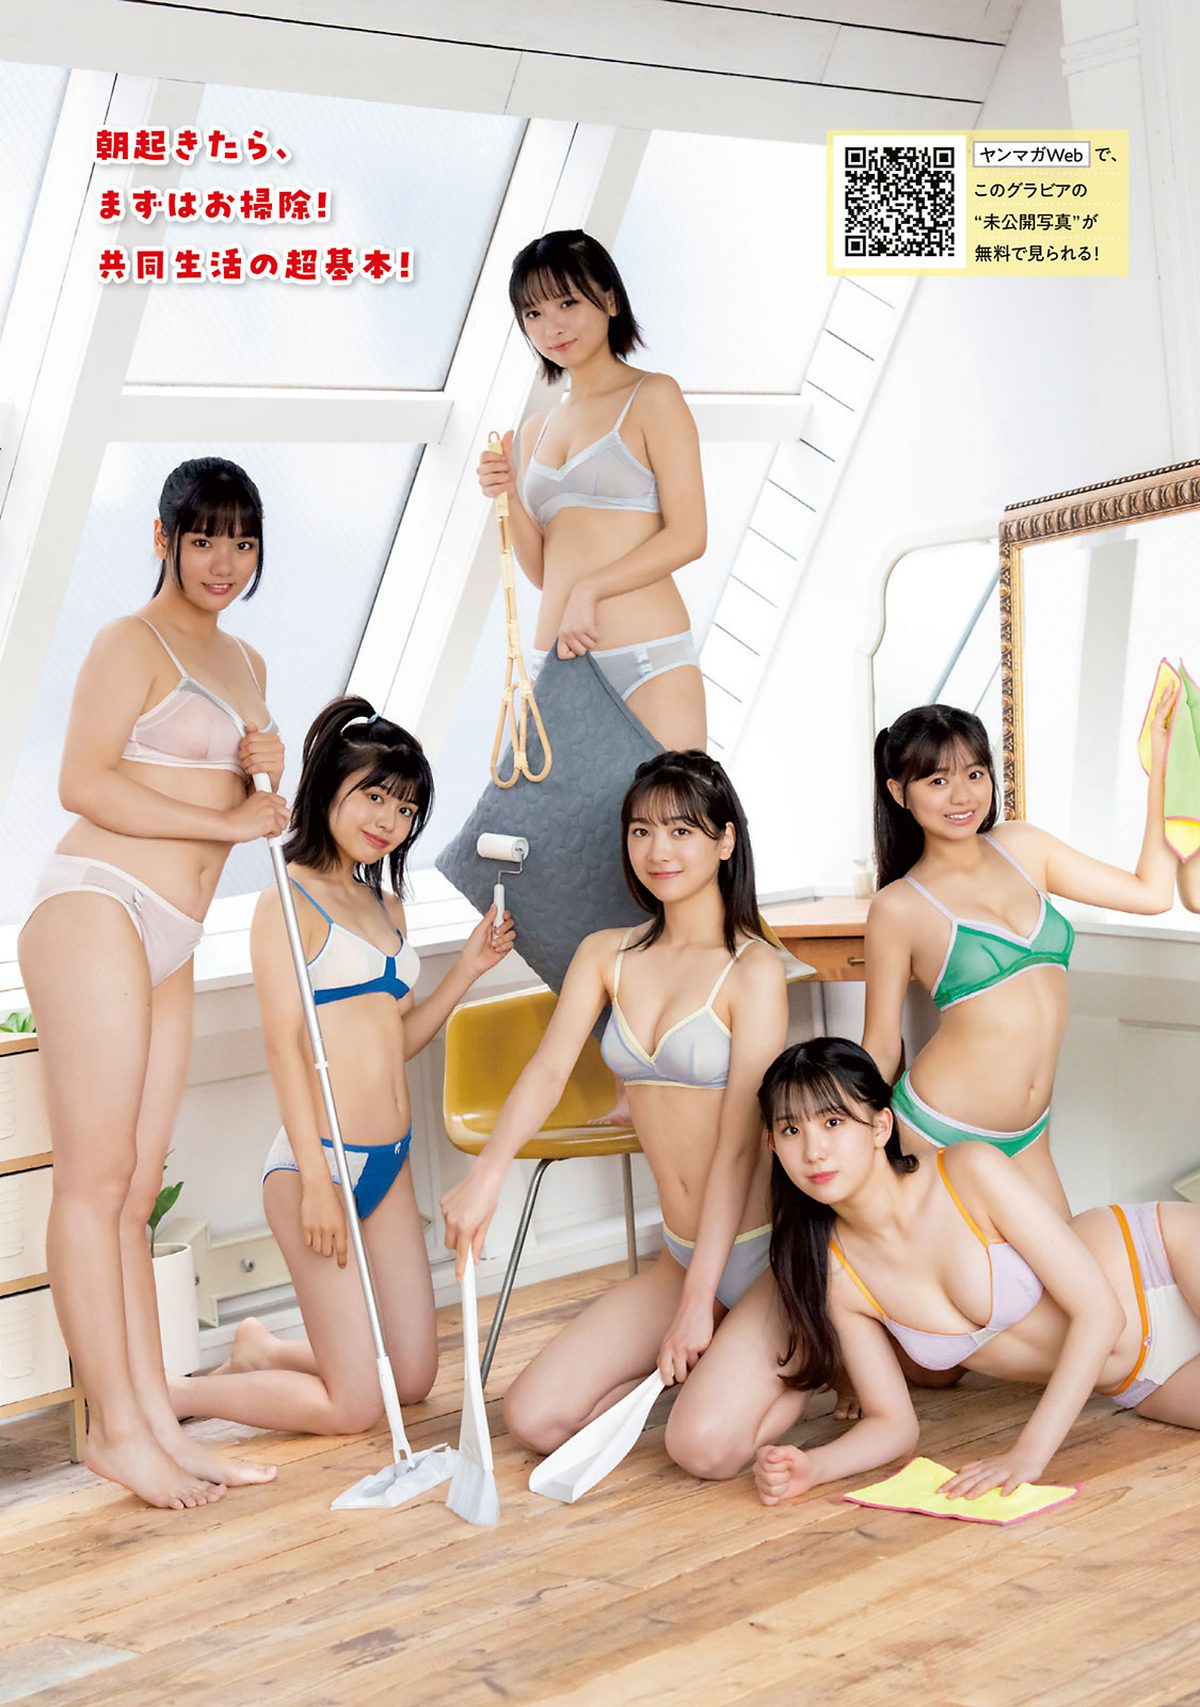 Young Magazine 2024 No 04 05 Maya Imamori 今森茉耶 0004 5921238236.jpg